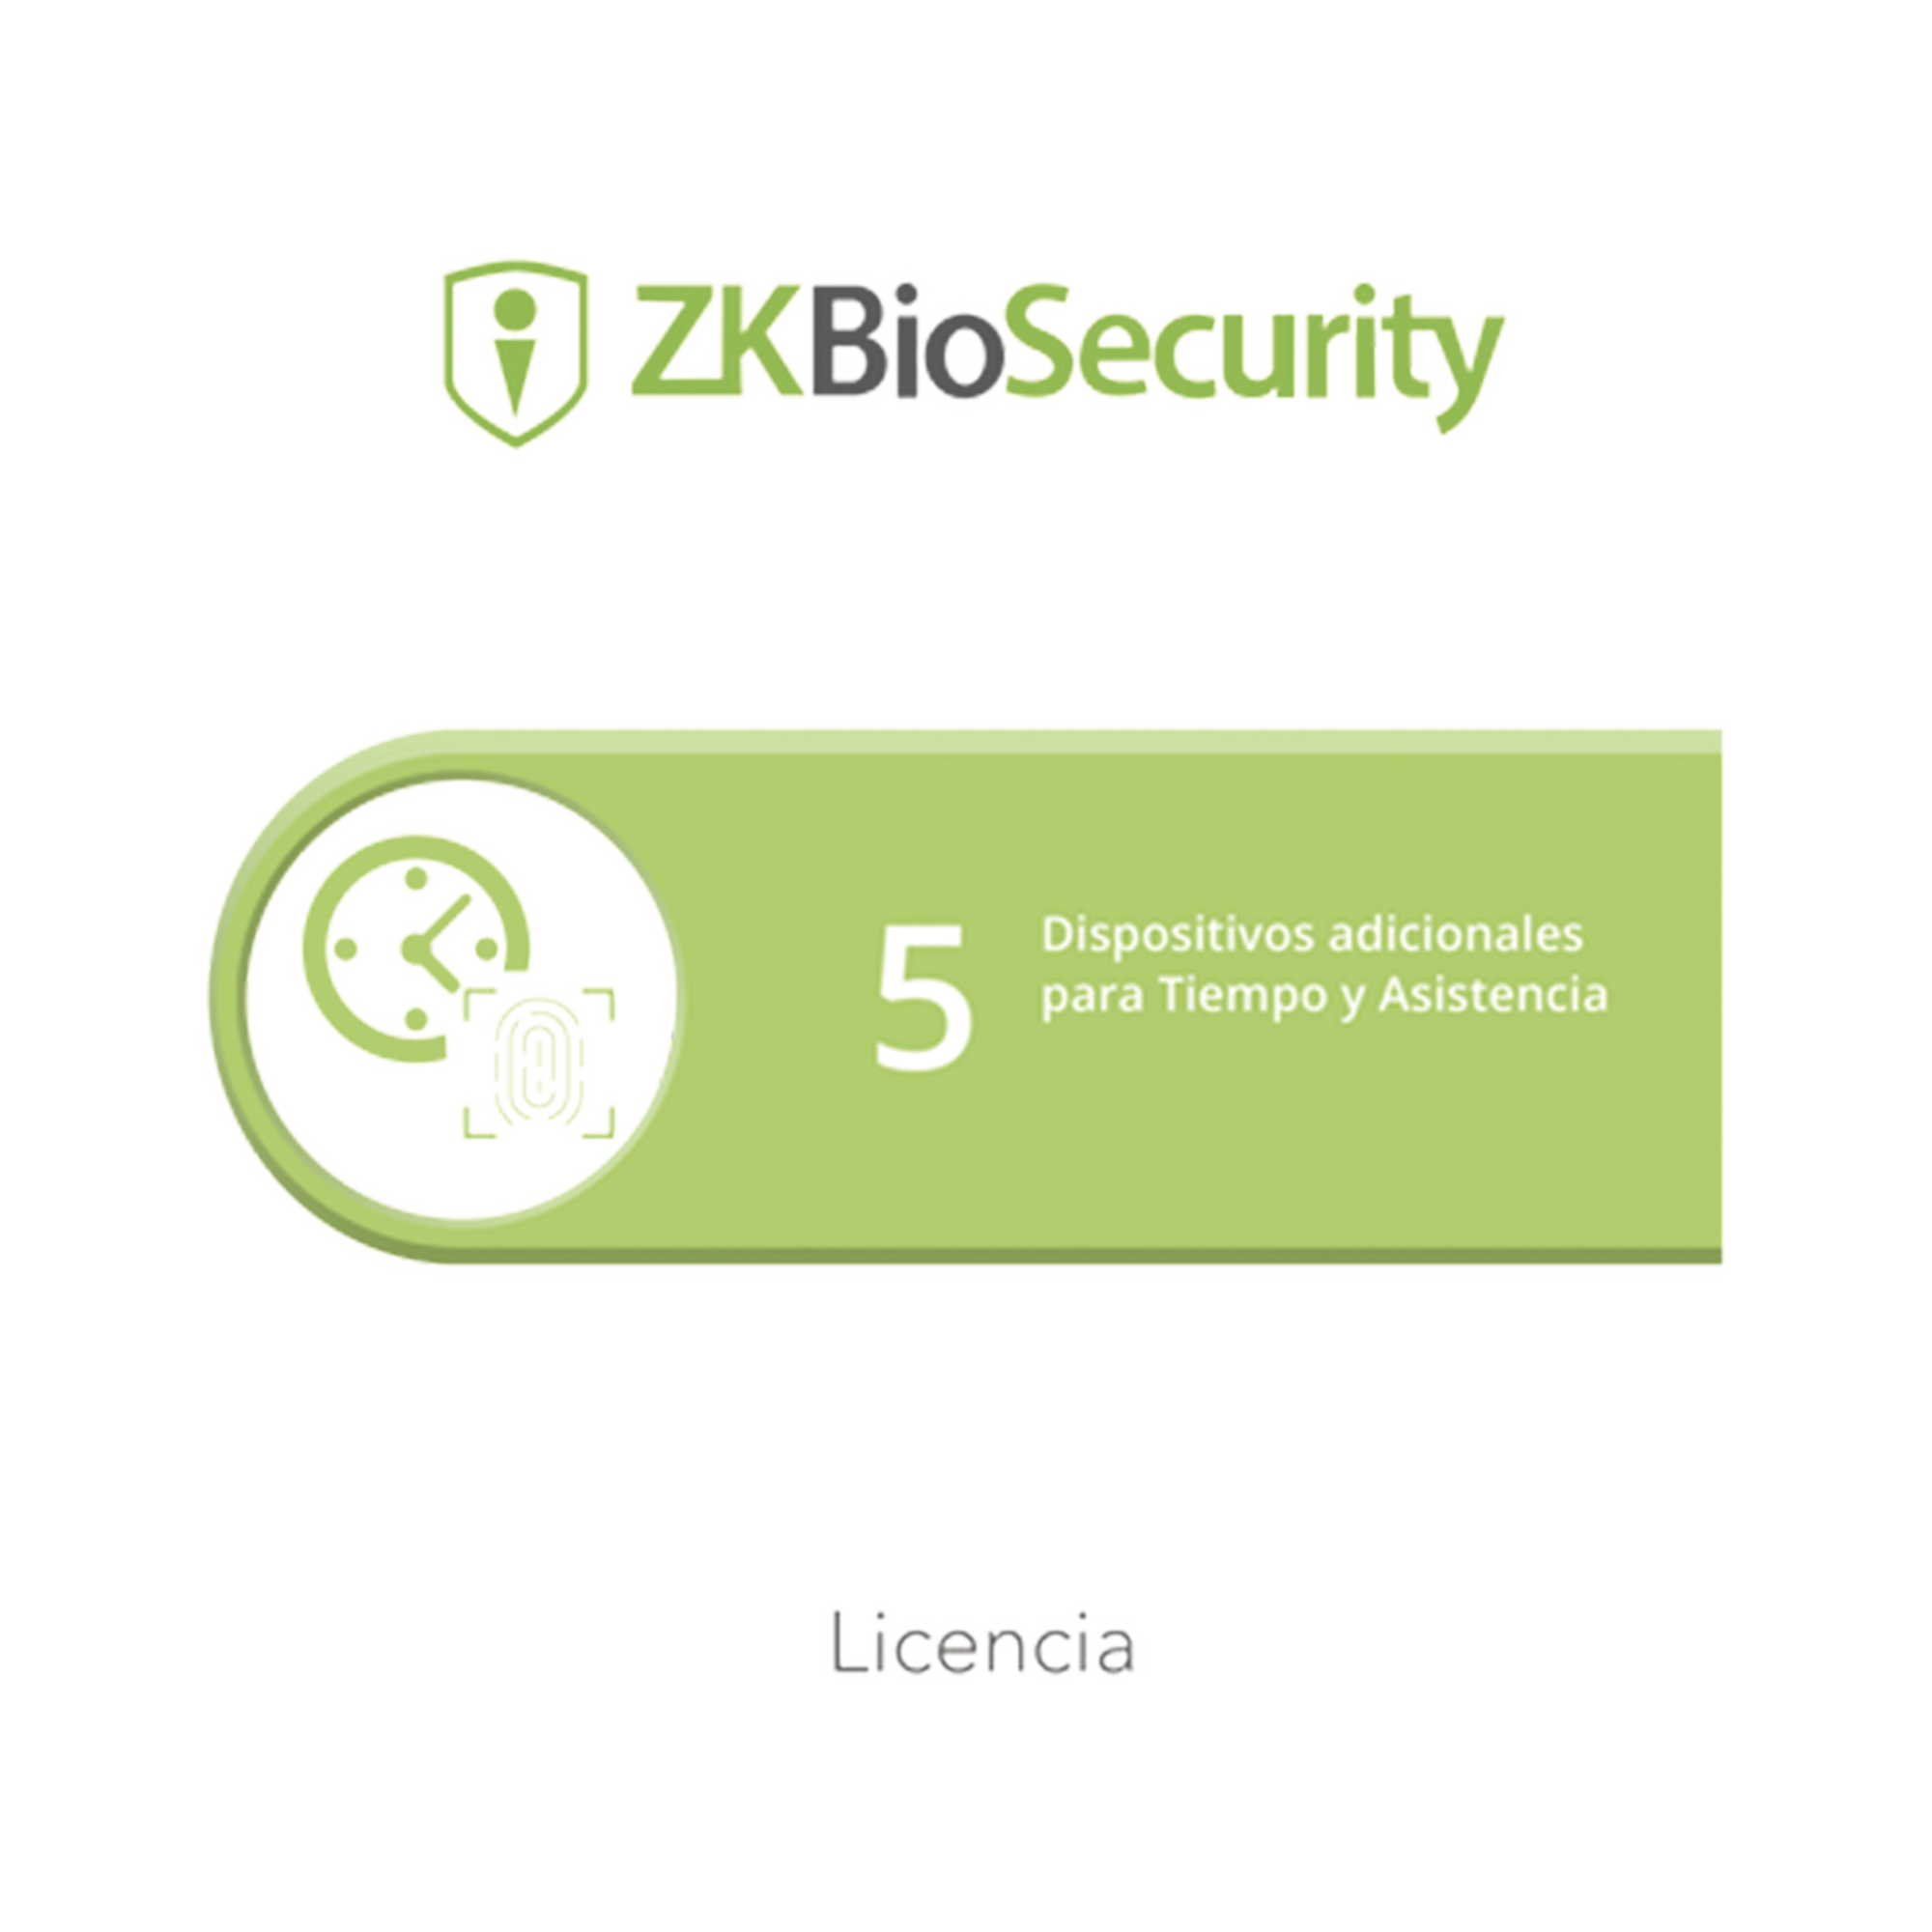 Licencia para ZKBiosecurity permite gestionar hasta 5 dispositivos para tiempo y asistencia